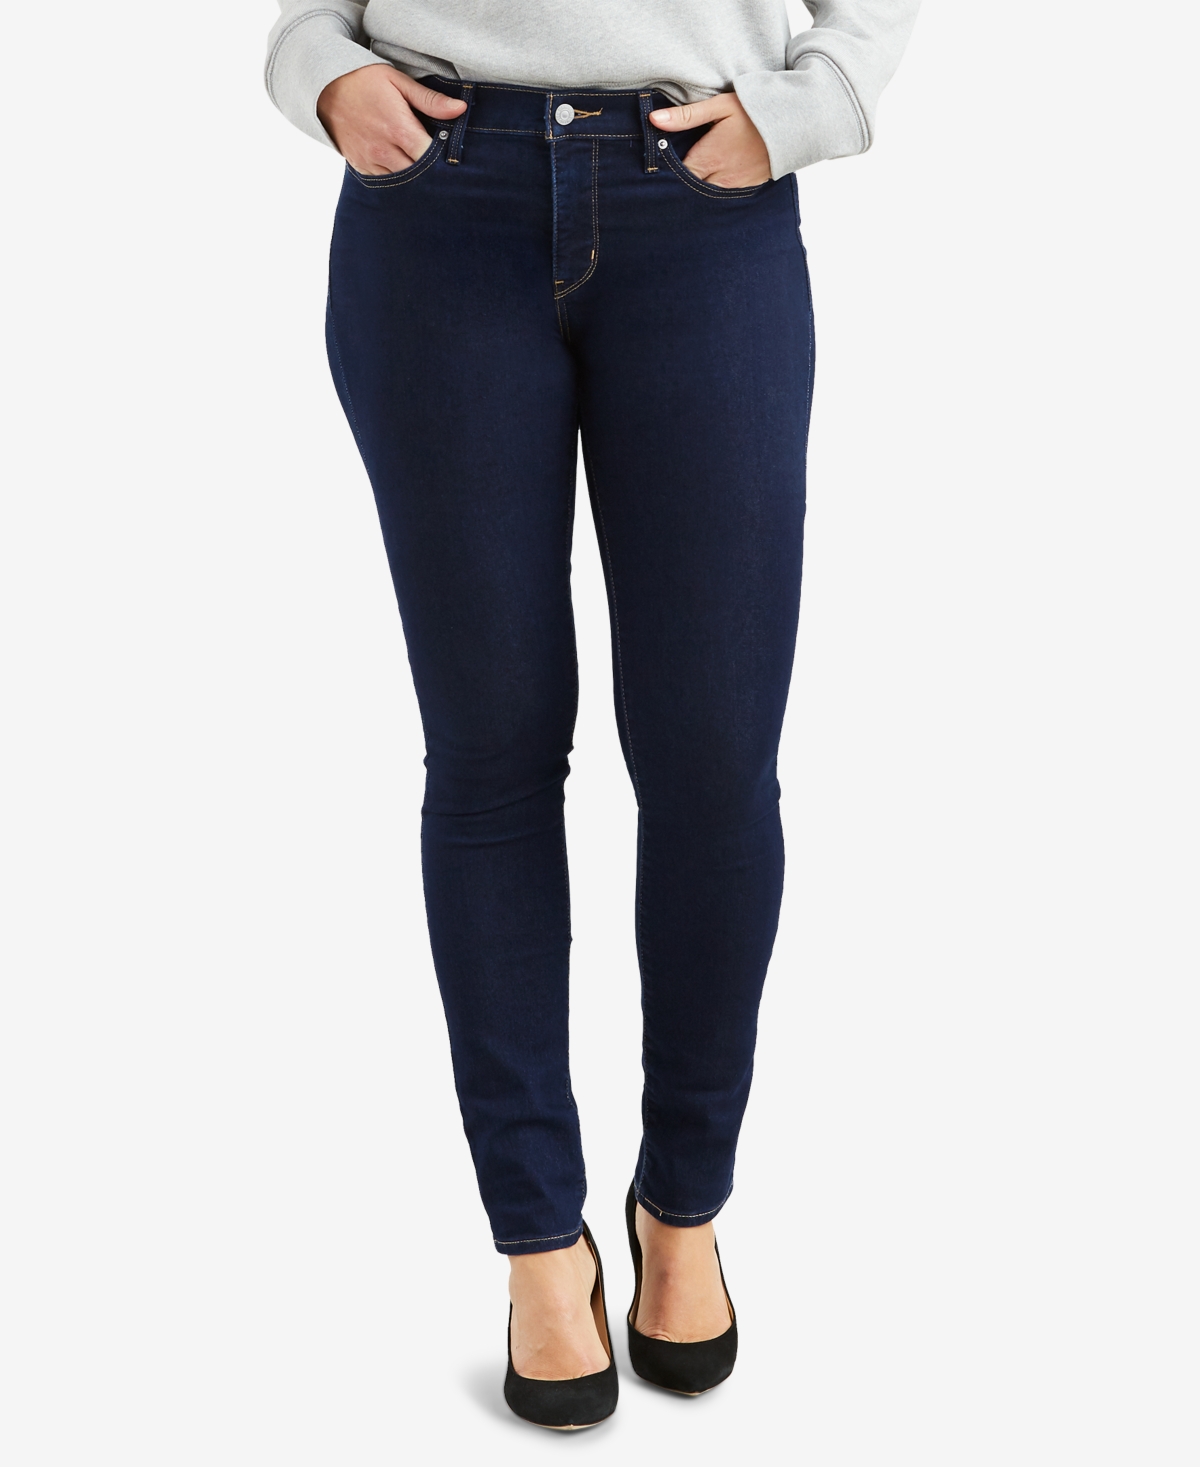 Women's 311 Shaping Skinny Jeans in Short Length - Black